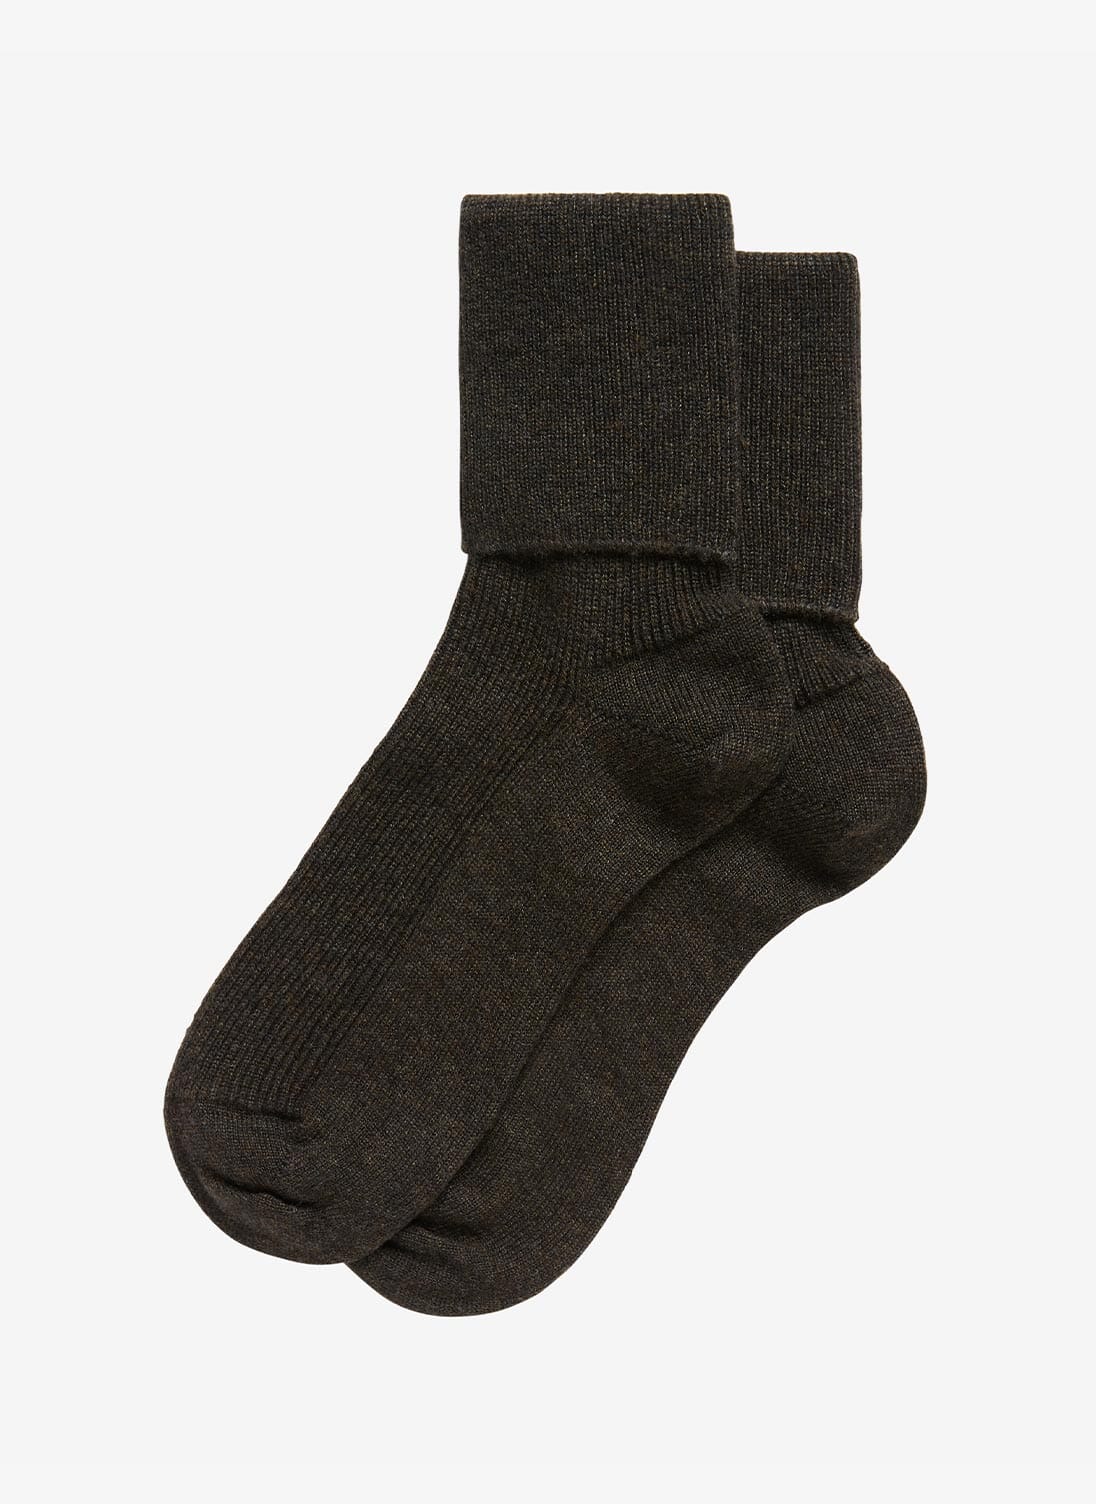 Peat Cashmere Socks | Women's Cashmere Socks | Brora UK